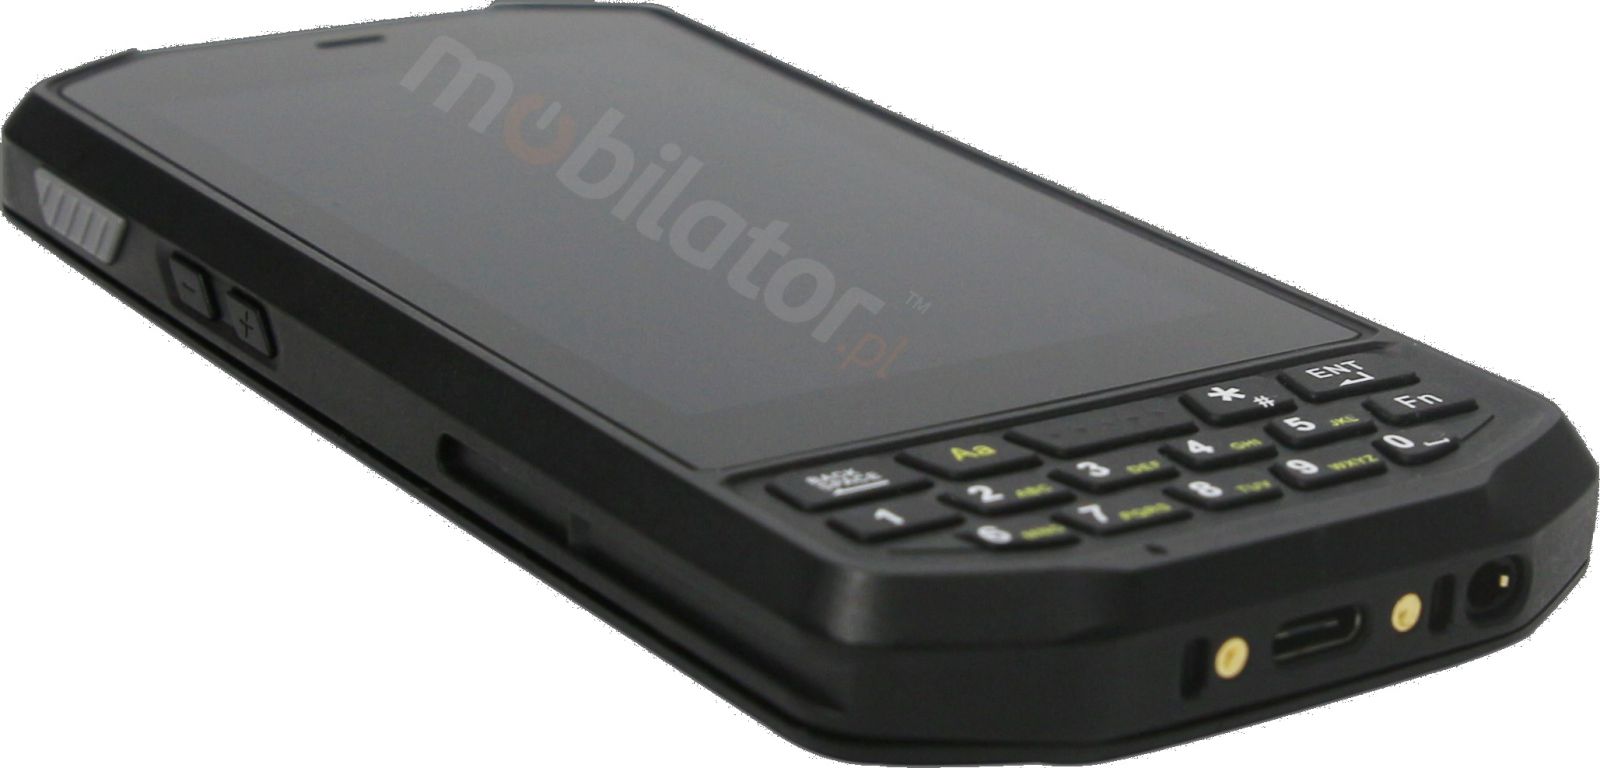 Mobipad Qxtron 4100 v.8 - Wytrzymay (IP65 + MIL-STD-810G) terminal danych z systemem Android 9.0, czytnikiem kodw 2D Honeywell, NFC, 4GB RAM,64GB ROM + czytnik radiowy UHF